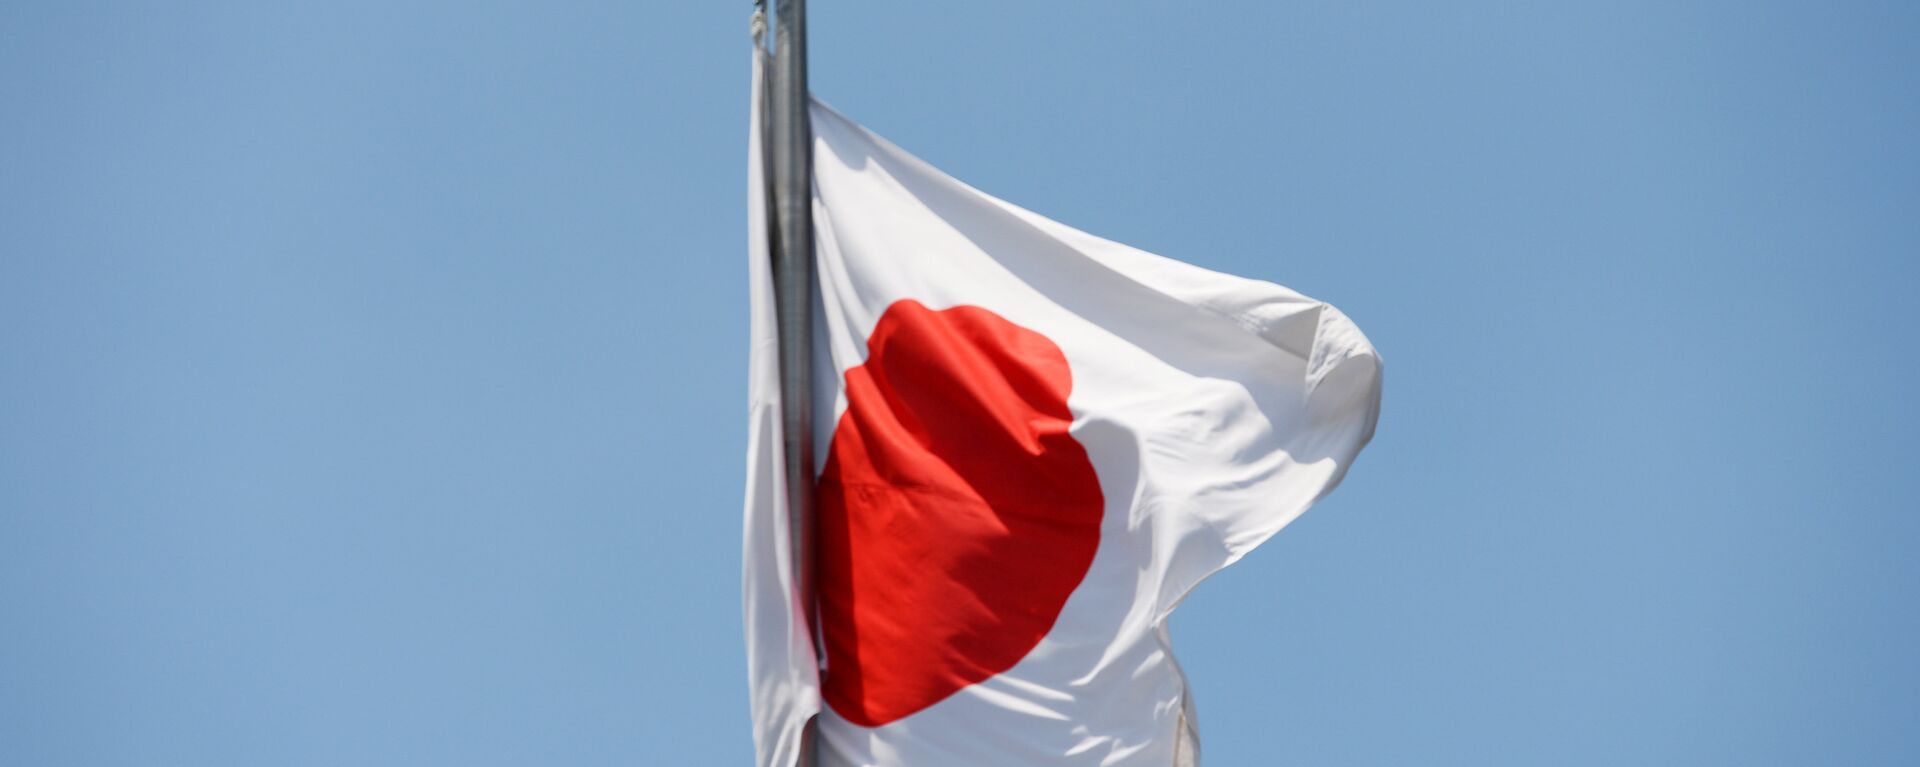 The state flag of Japan. - Sputnik International, 1920, 02.05.2022